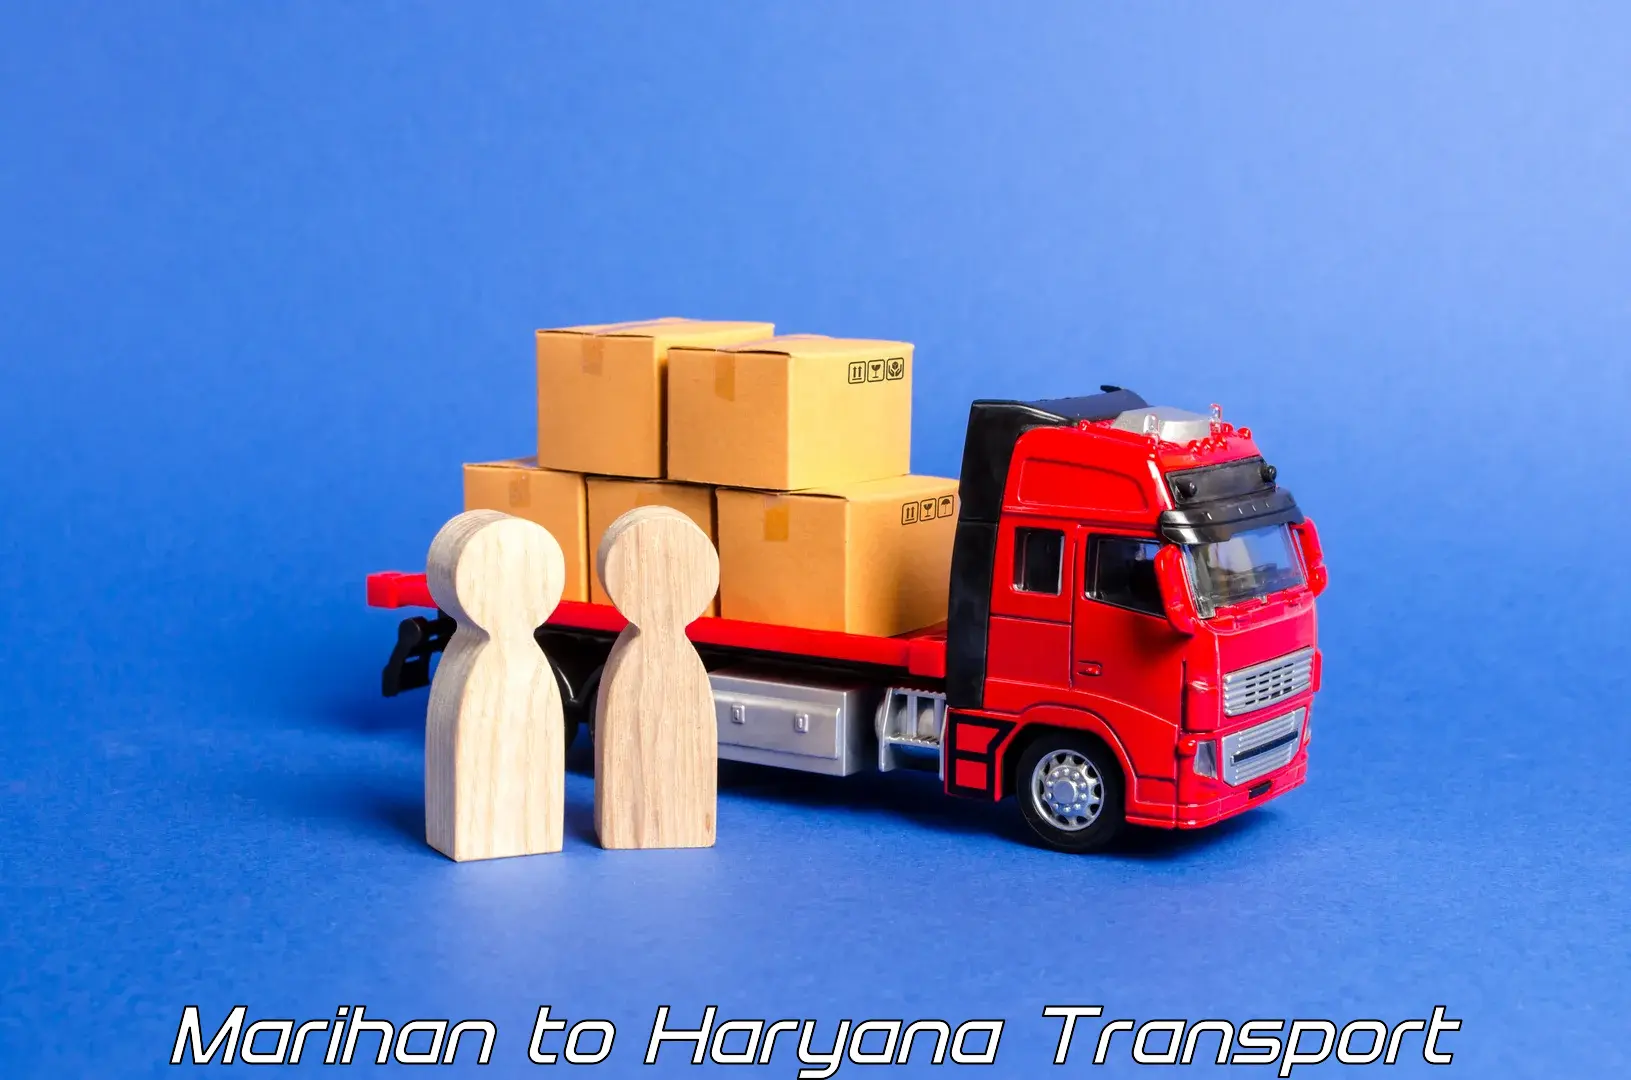 Intercity goods transport Marihan to Kalanwali